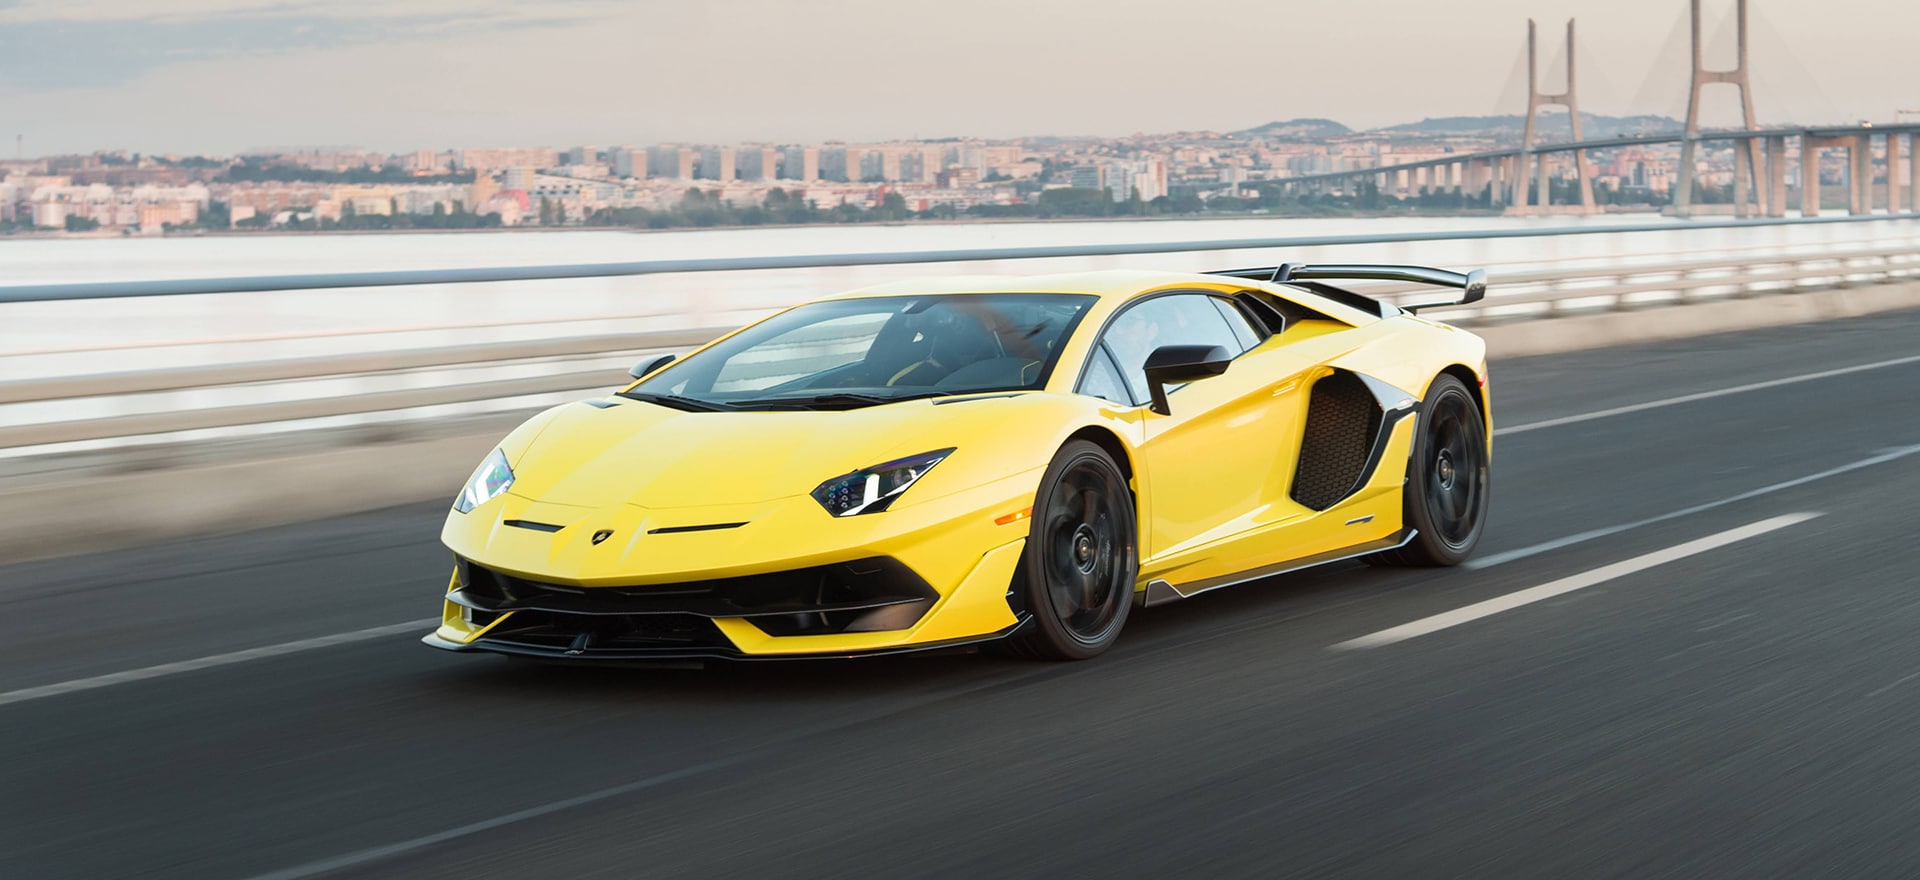 Lamborghini Aventador SVJ  - Top 20 Fastest Sports Cars in the World in 2023